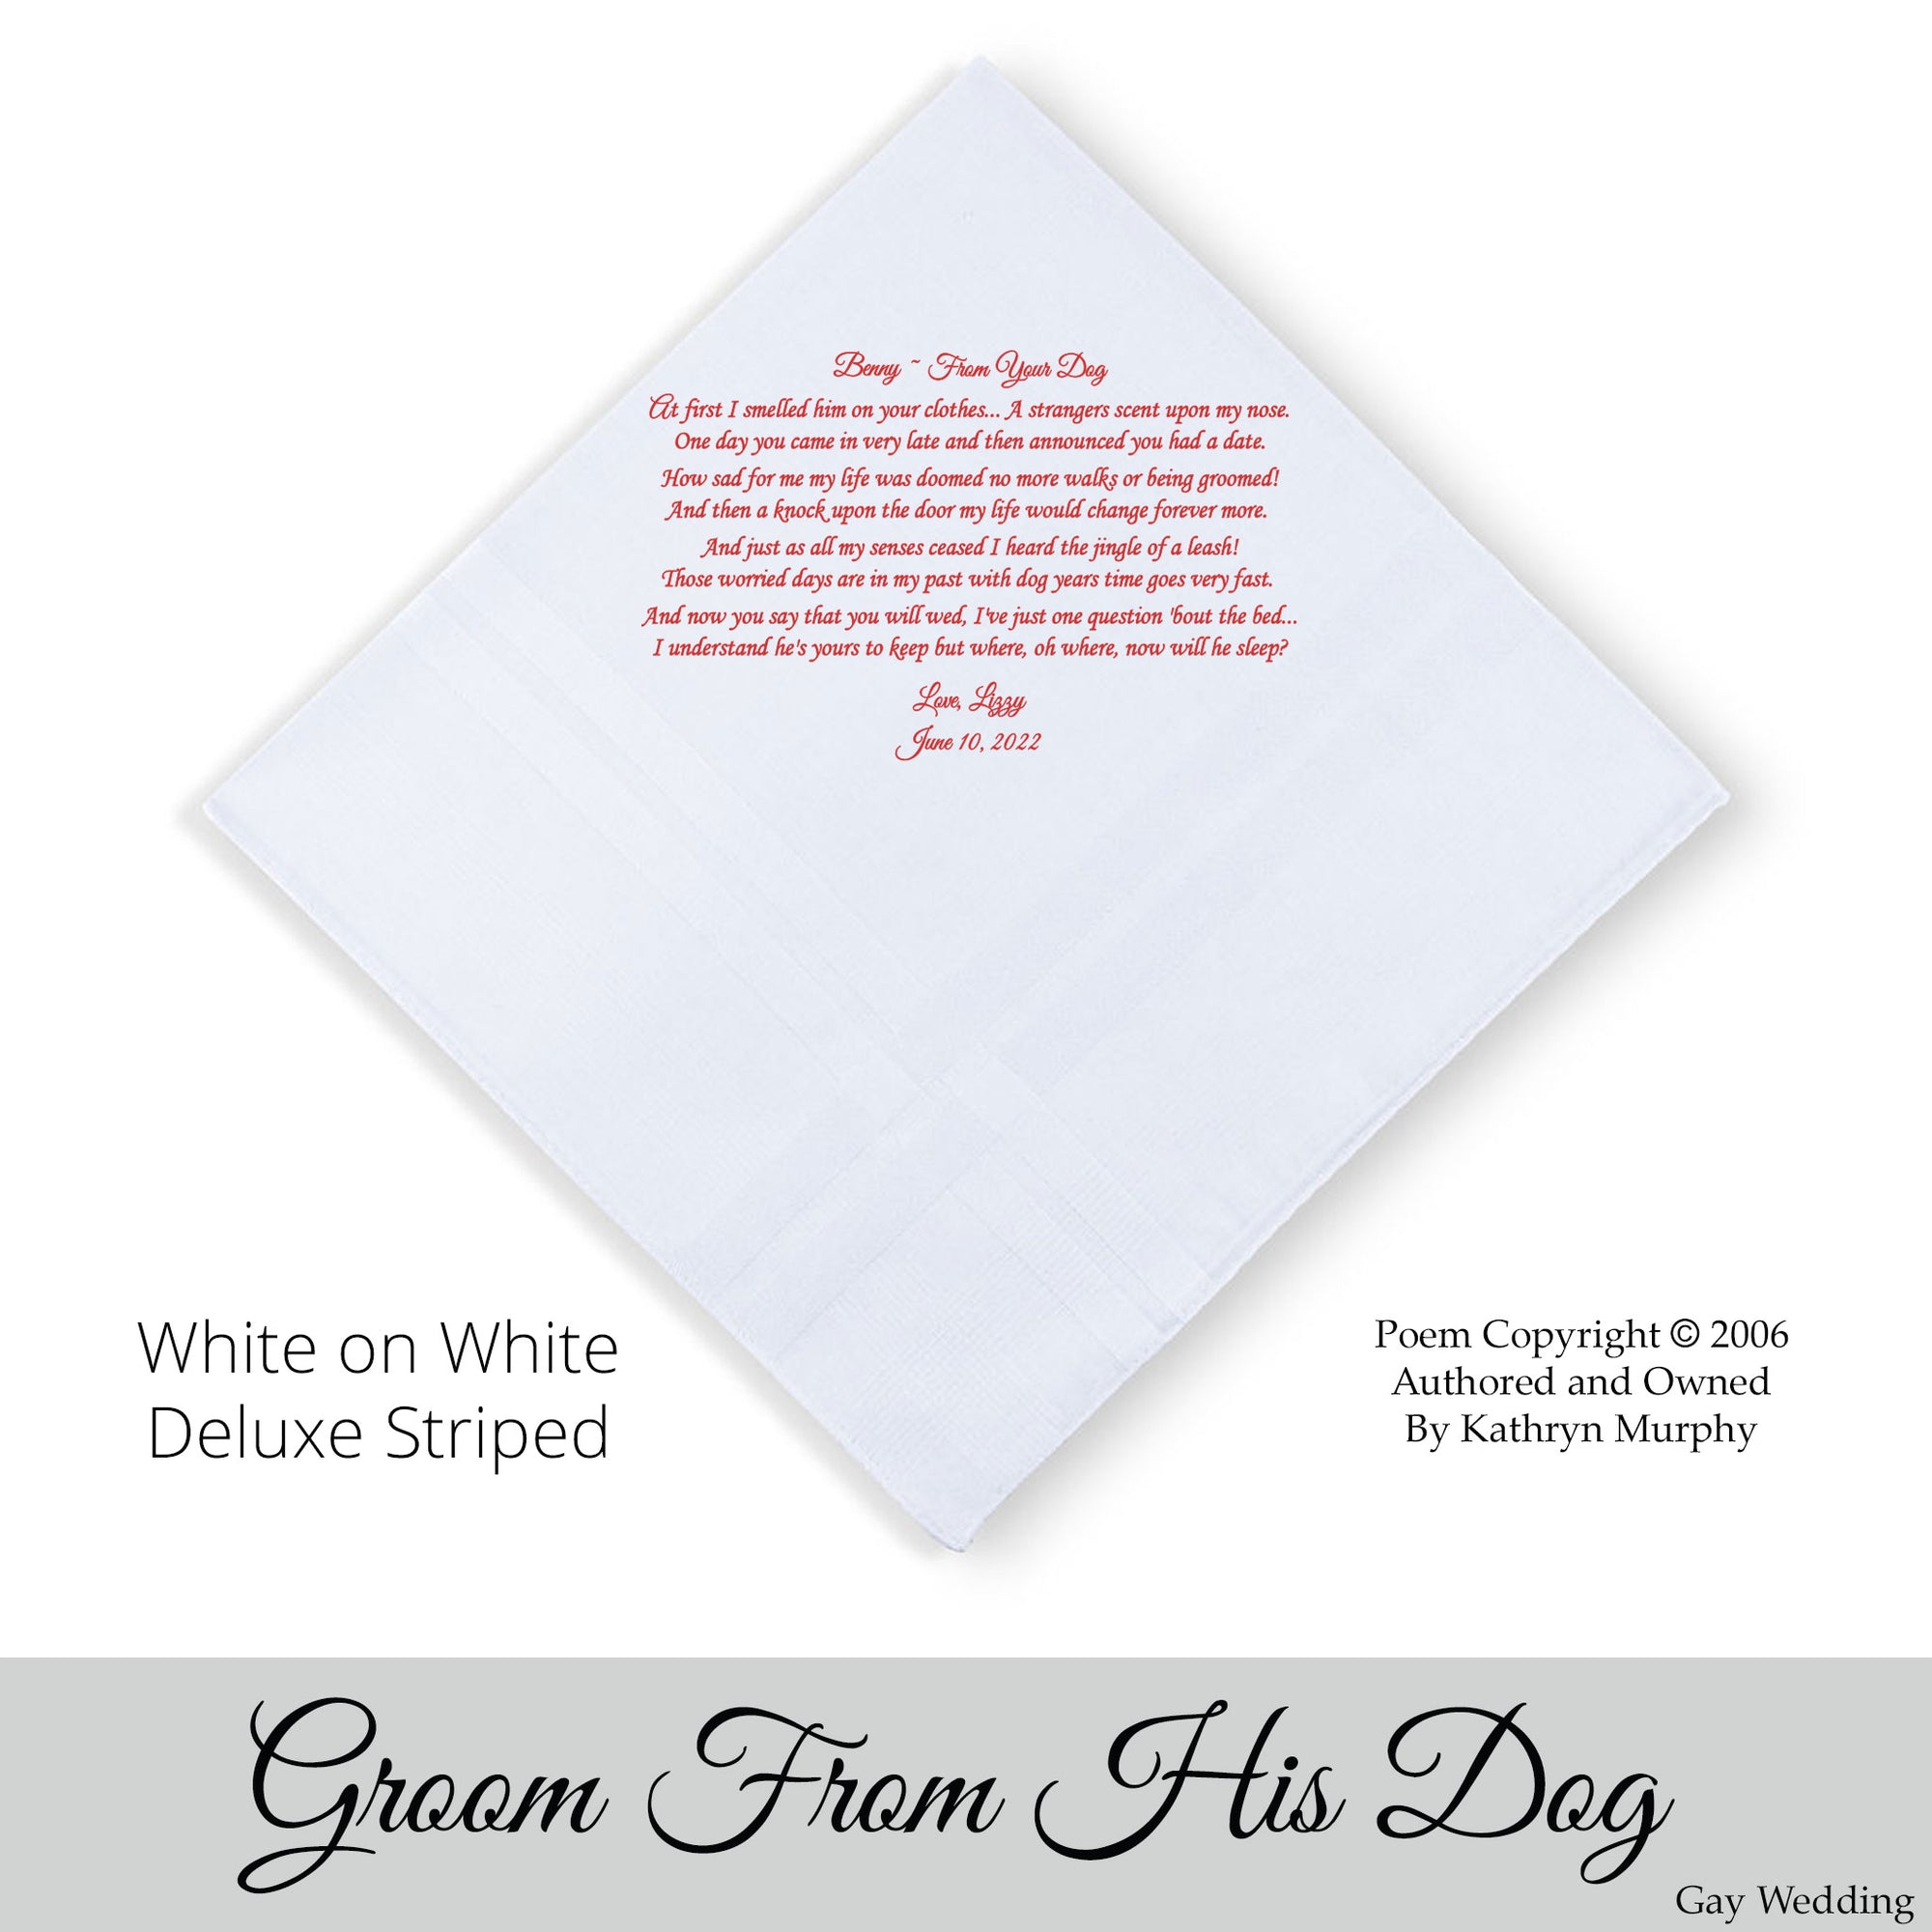 Gay Wedding Gift for the groom poem printed wedding hankie